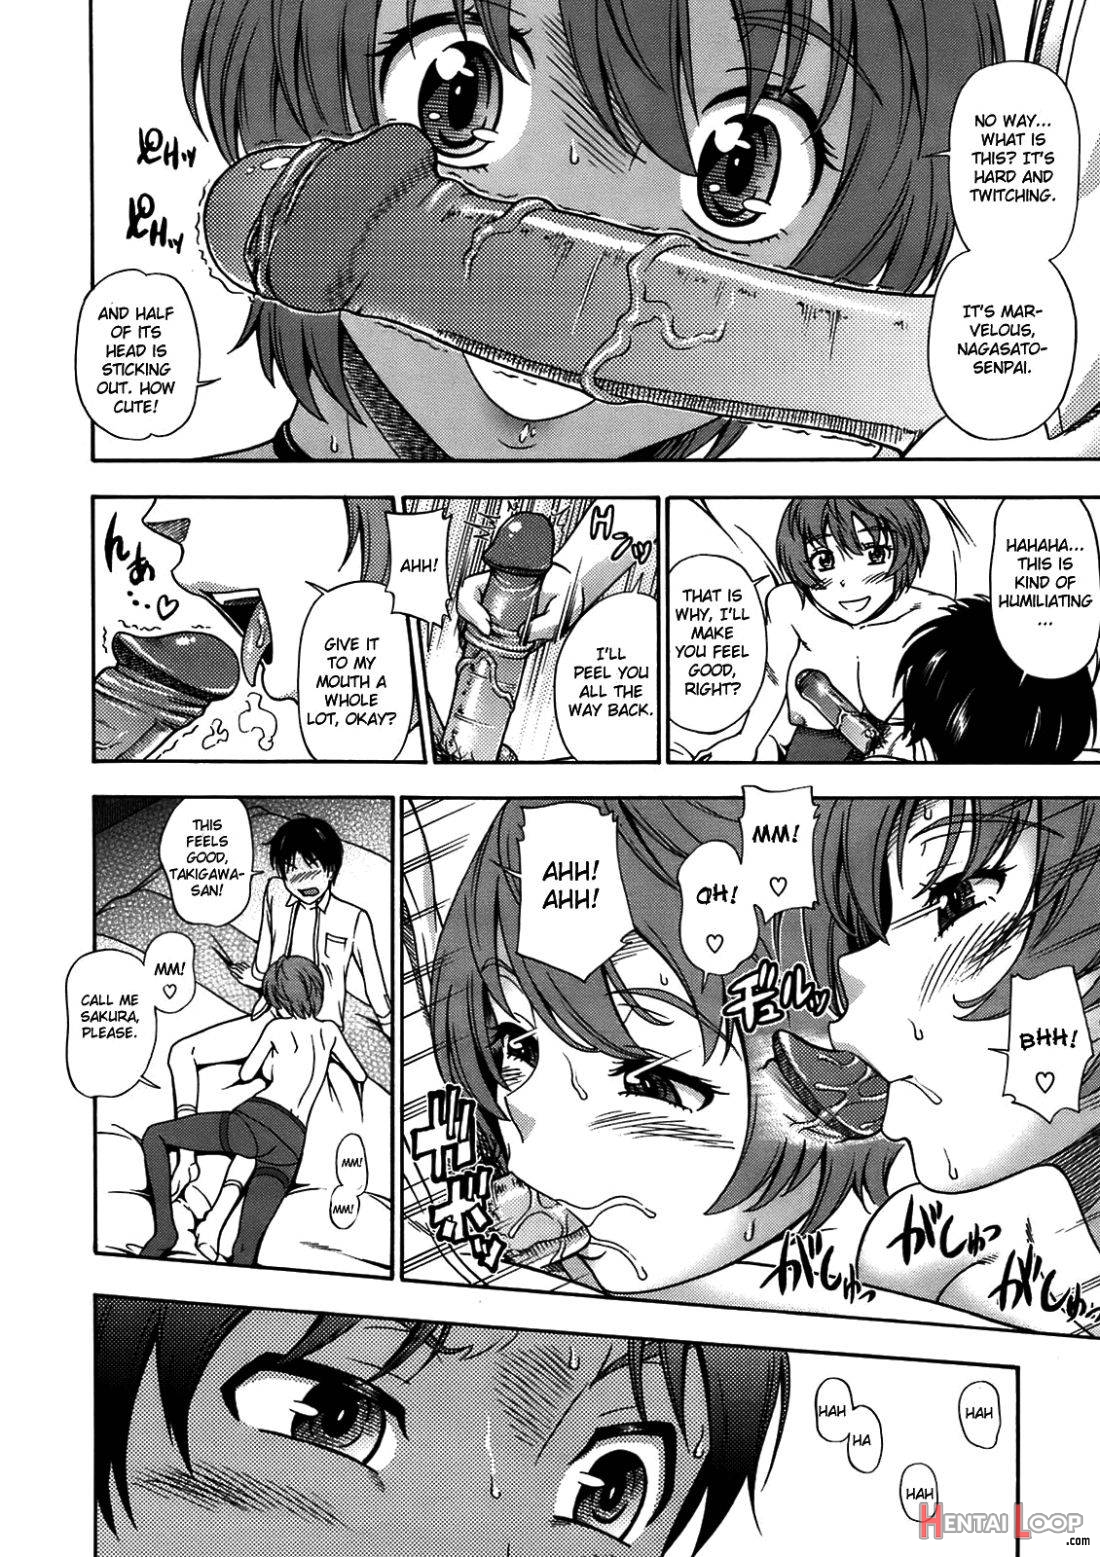 Sakura Chiru Saku page 8